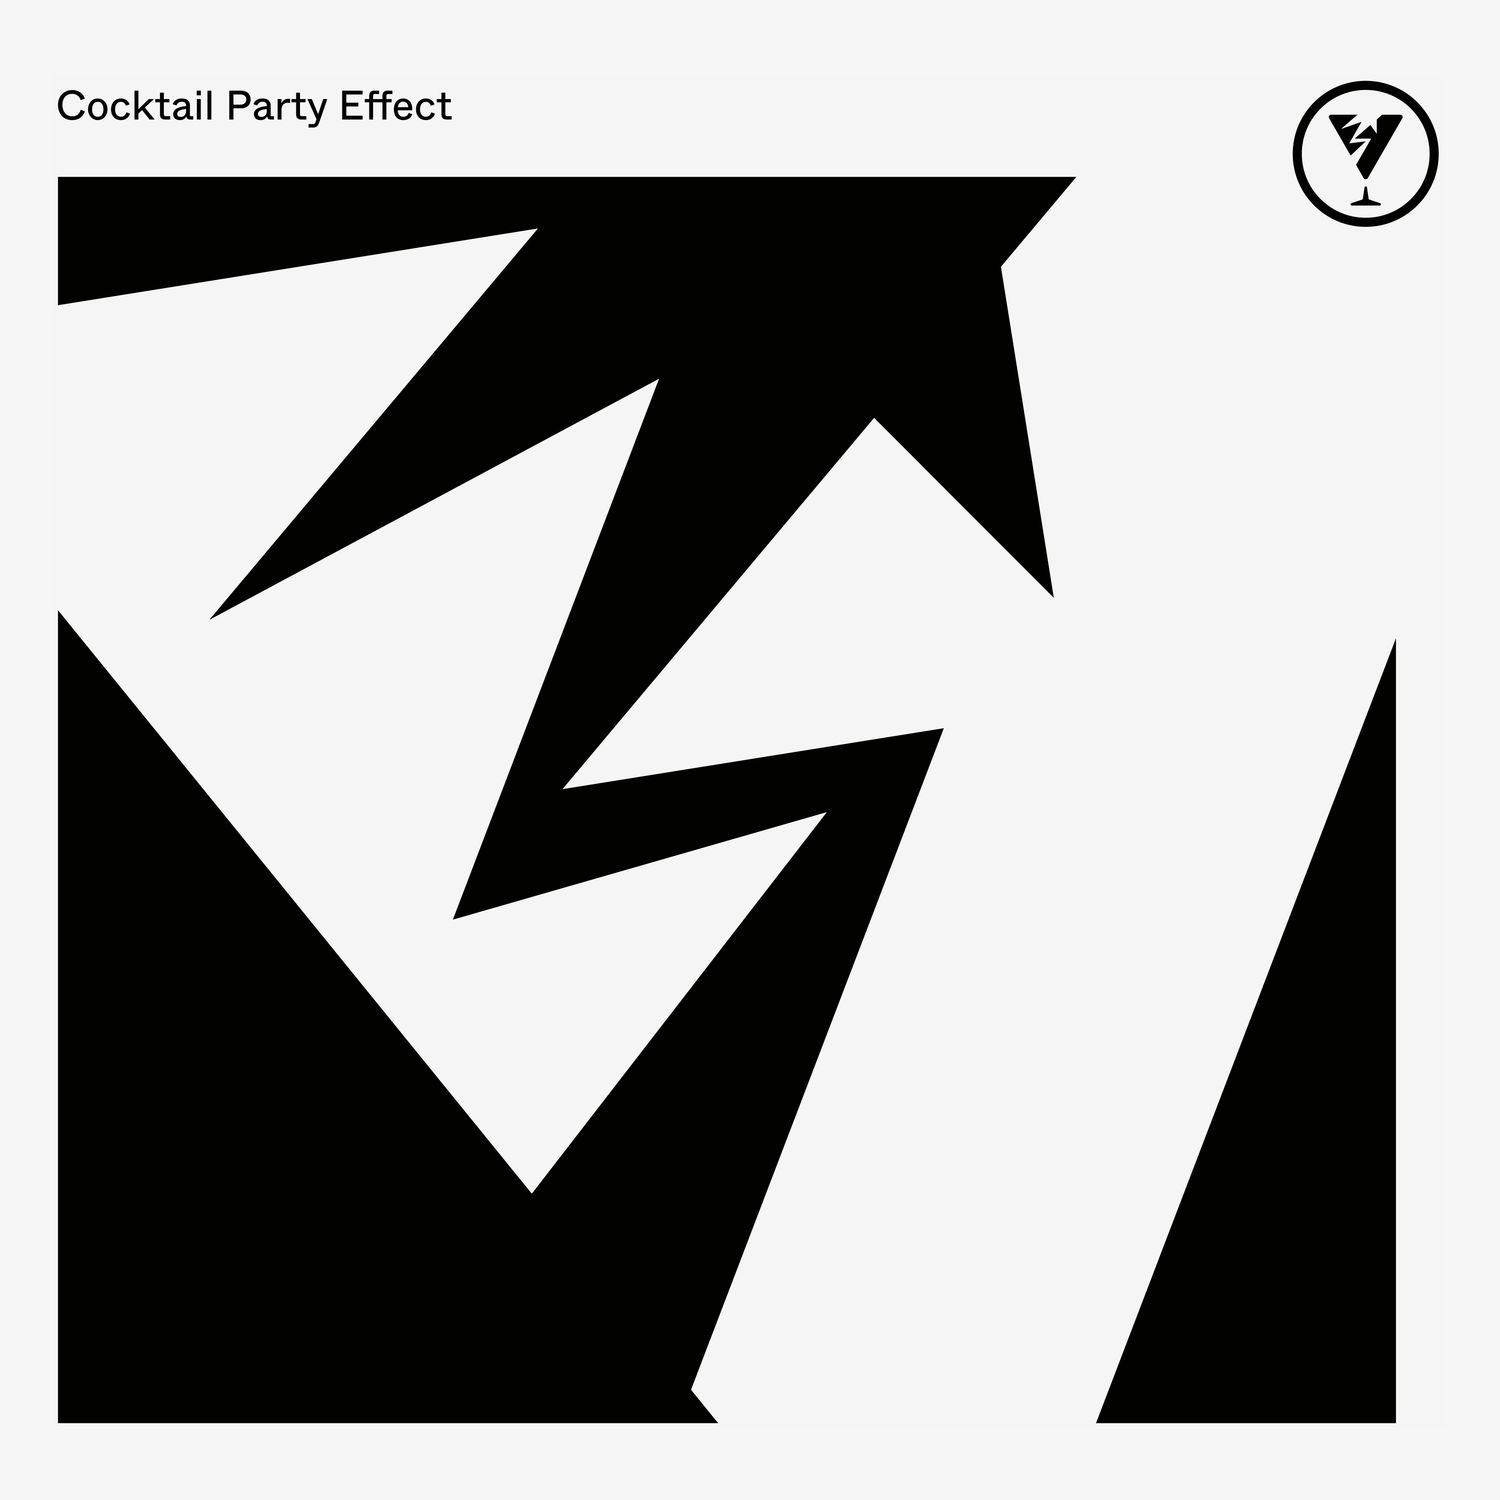 Cocktail Party Effect – Cocktail Party Effect